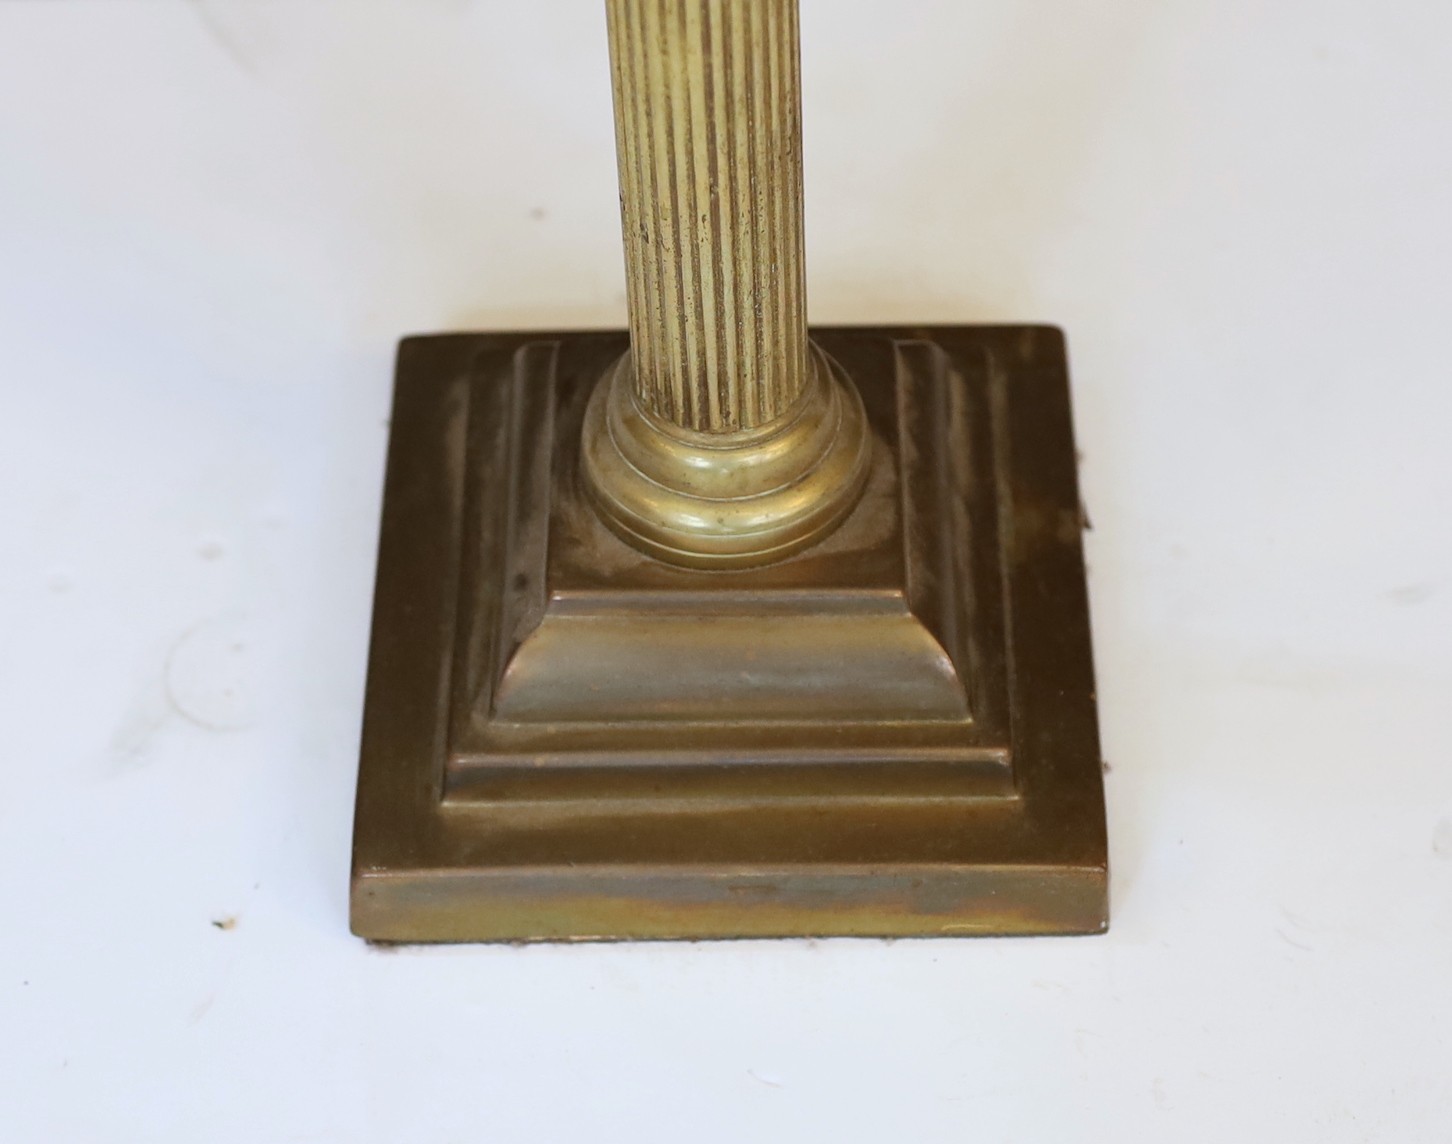 An Edwardian brass Corinthian column oil lamp with cut glass reservoir, improved duplex mechanism, - Image 5 of 5